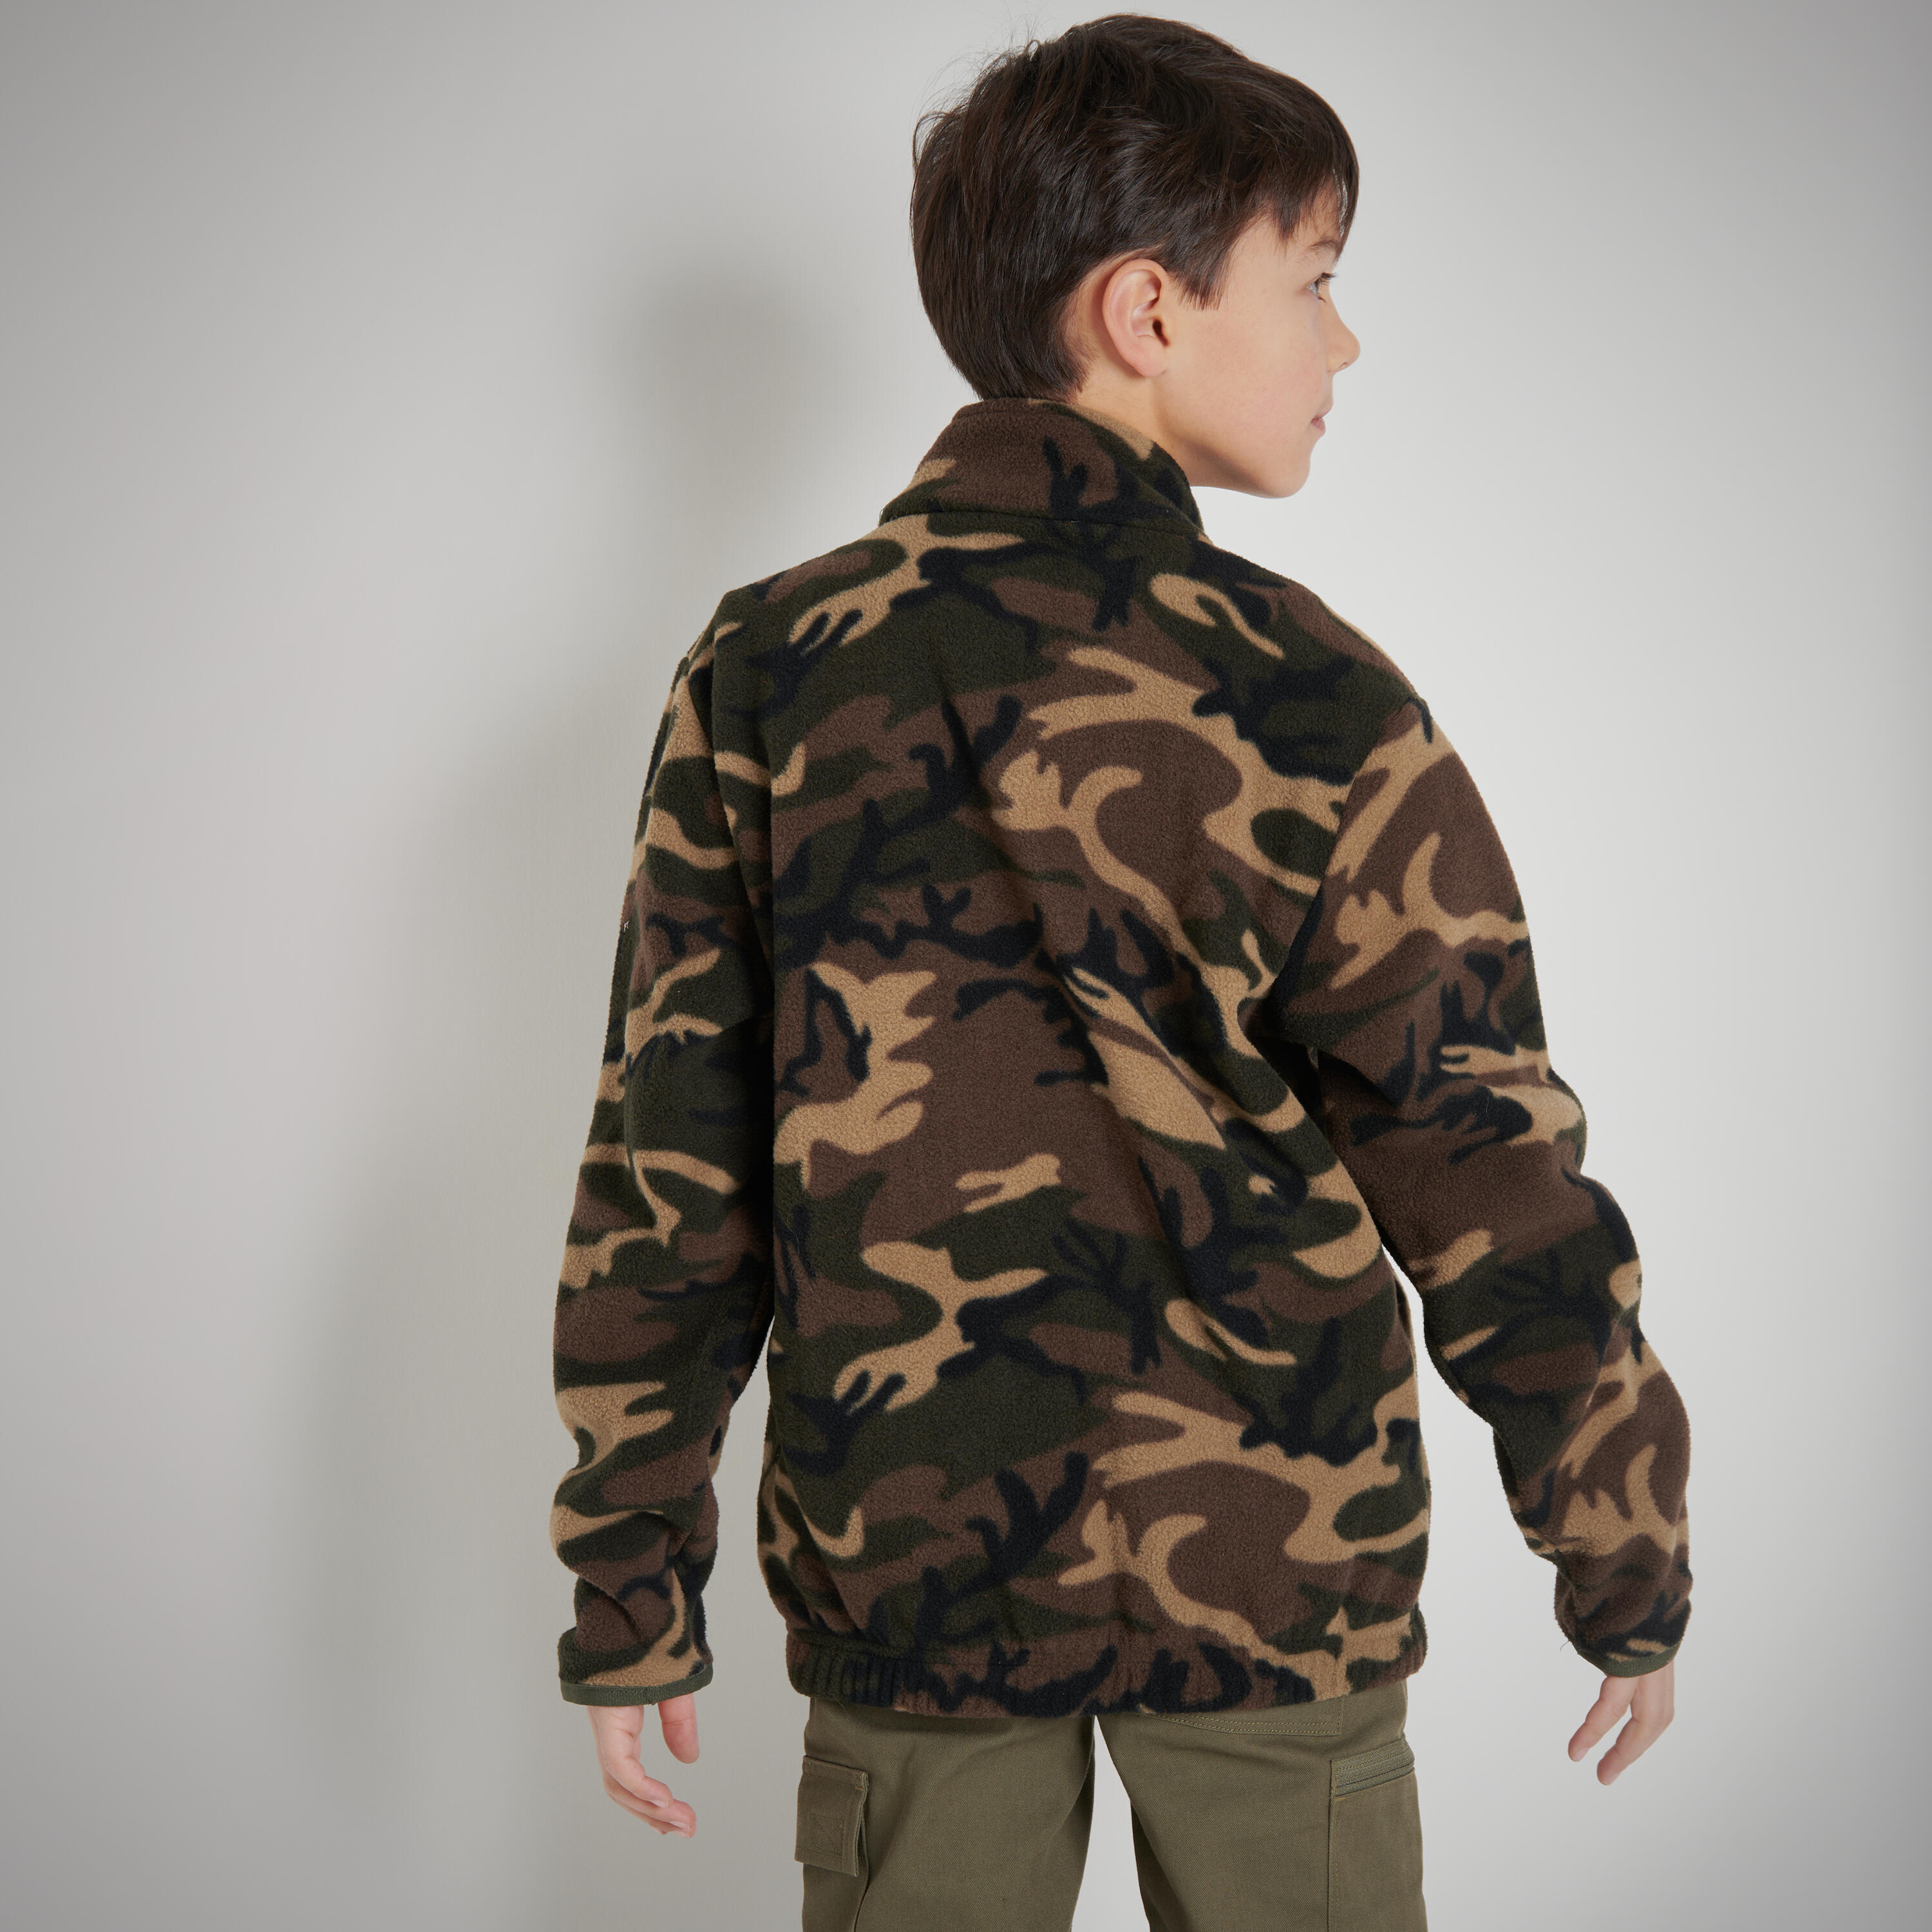 Polaire de chasse chaude enfant - 100 camouflage vert/marron - SOLOGNAC